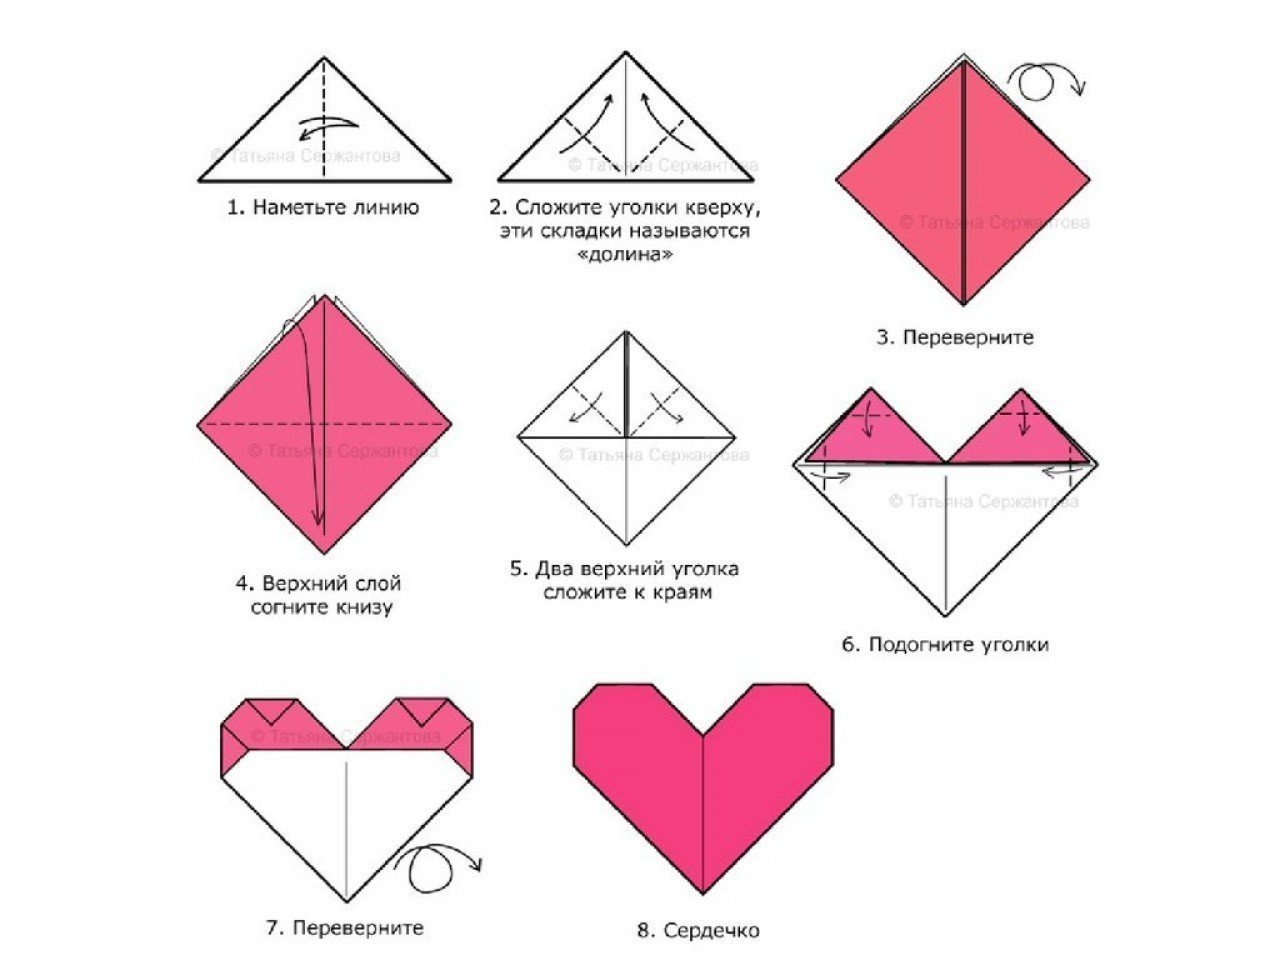 Поделки из а4 легкие. Оригами сердечко из бумаги пошаговая инструкция. Сердечки оригами из бумаги своими руками схемы поэтапно. Как сложить из бумаги сердечко схема. Оригами сердце из бумаги пошаговой инструкции.